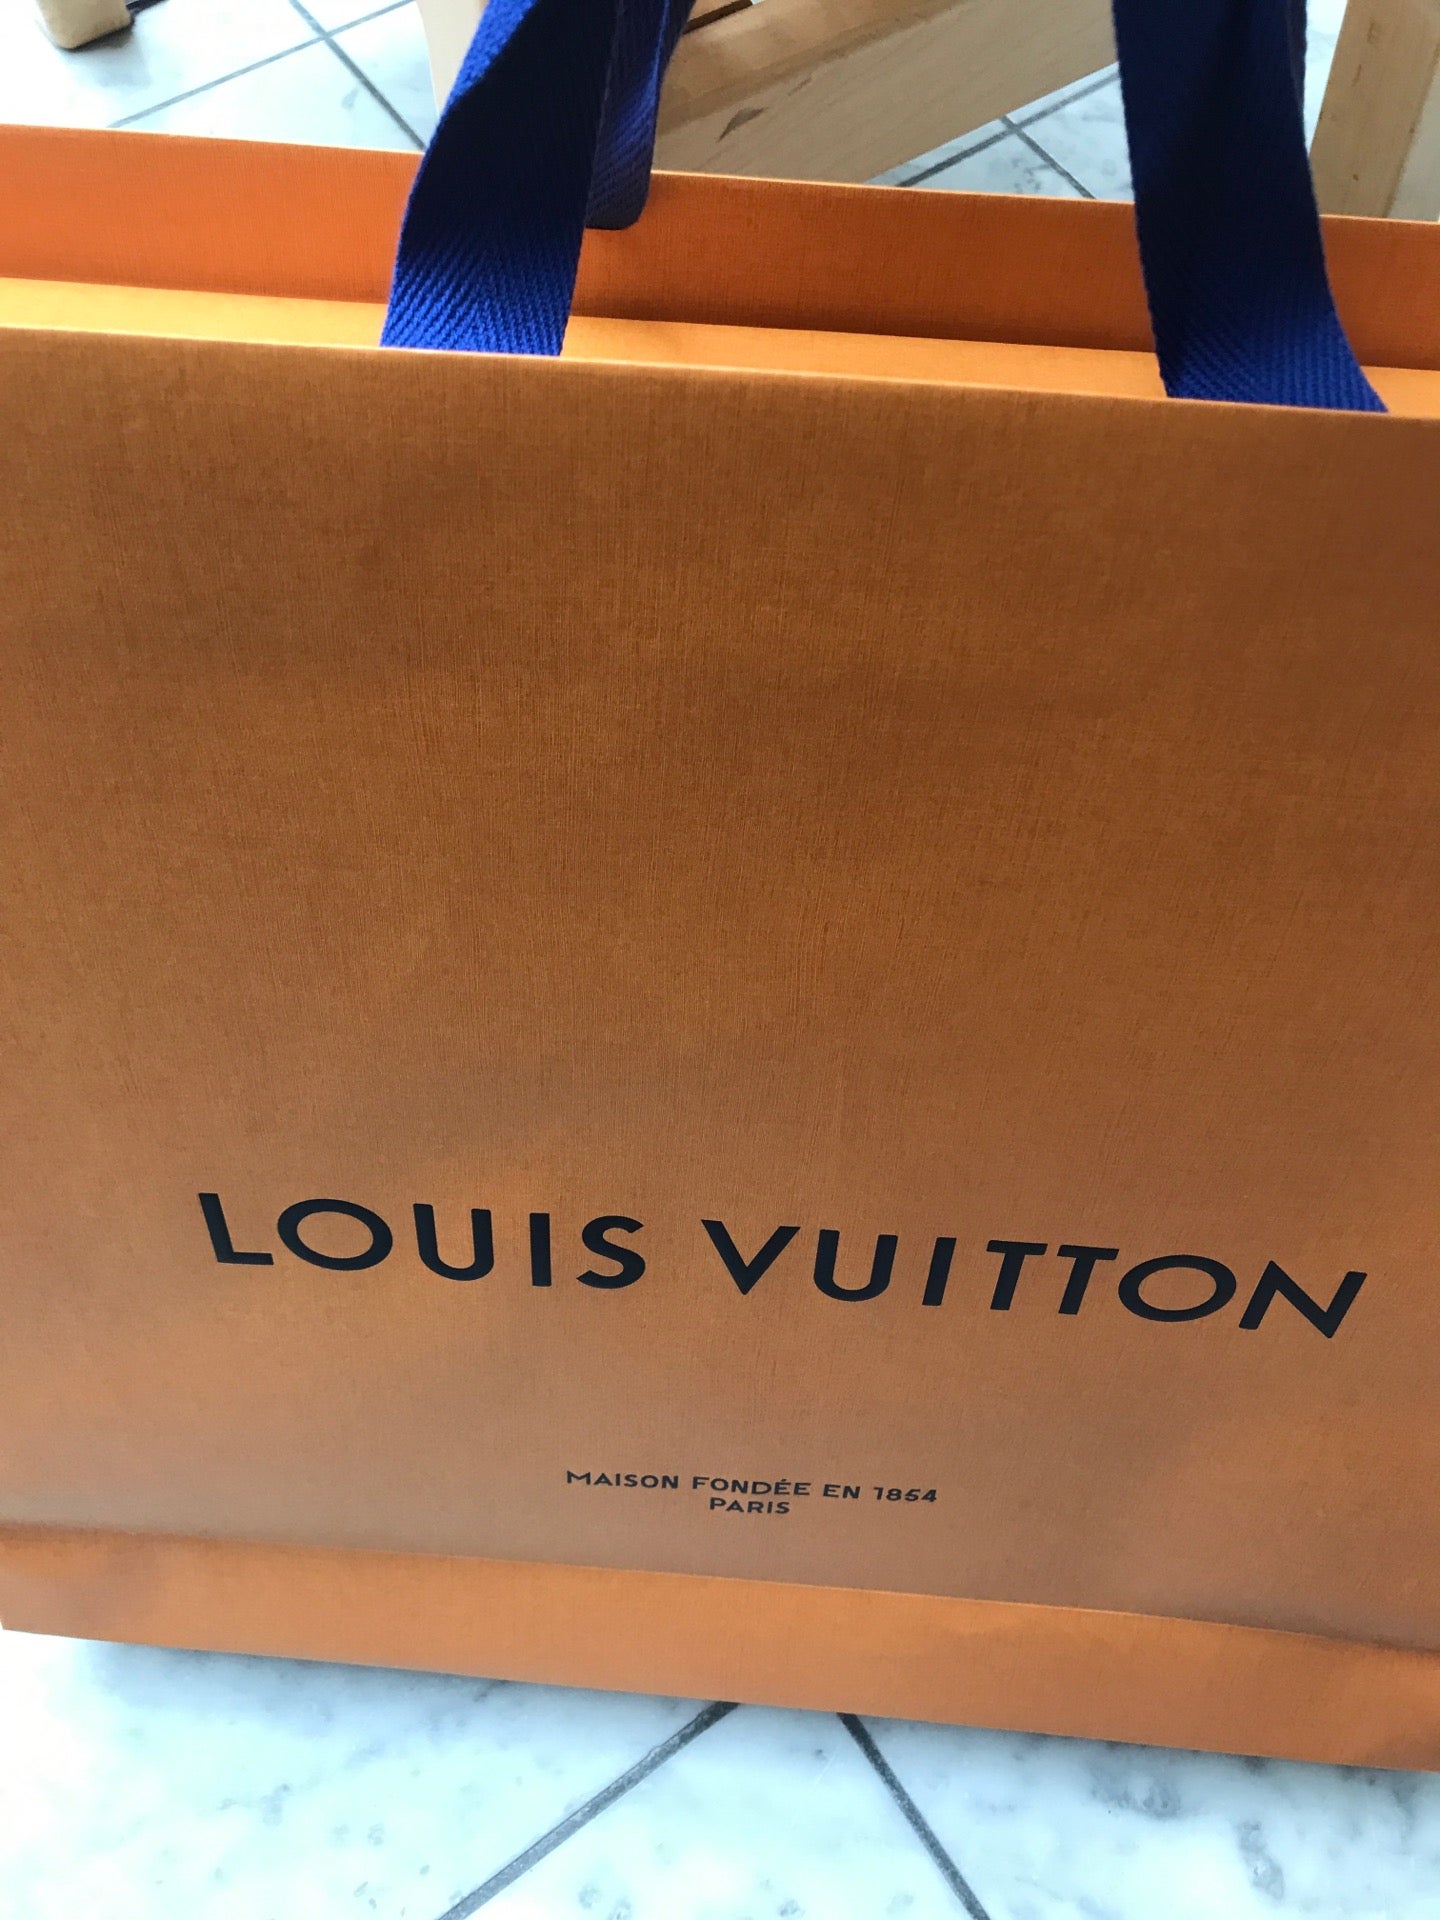 Louis Vuitton, Nashville